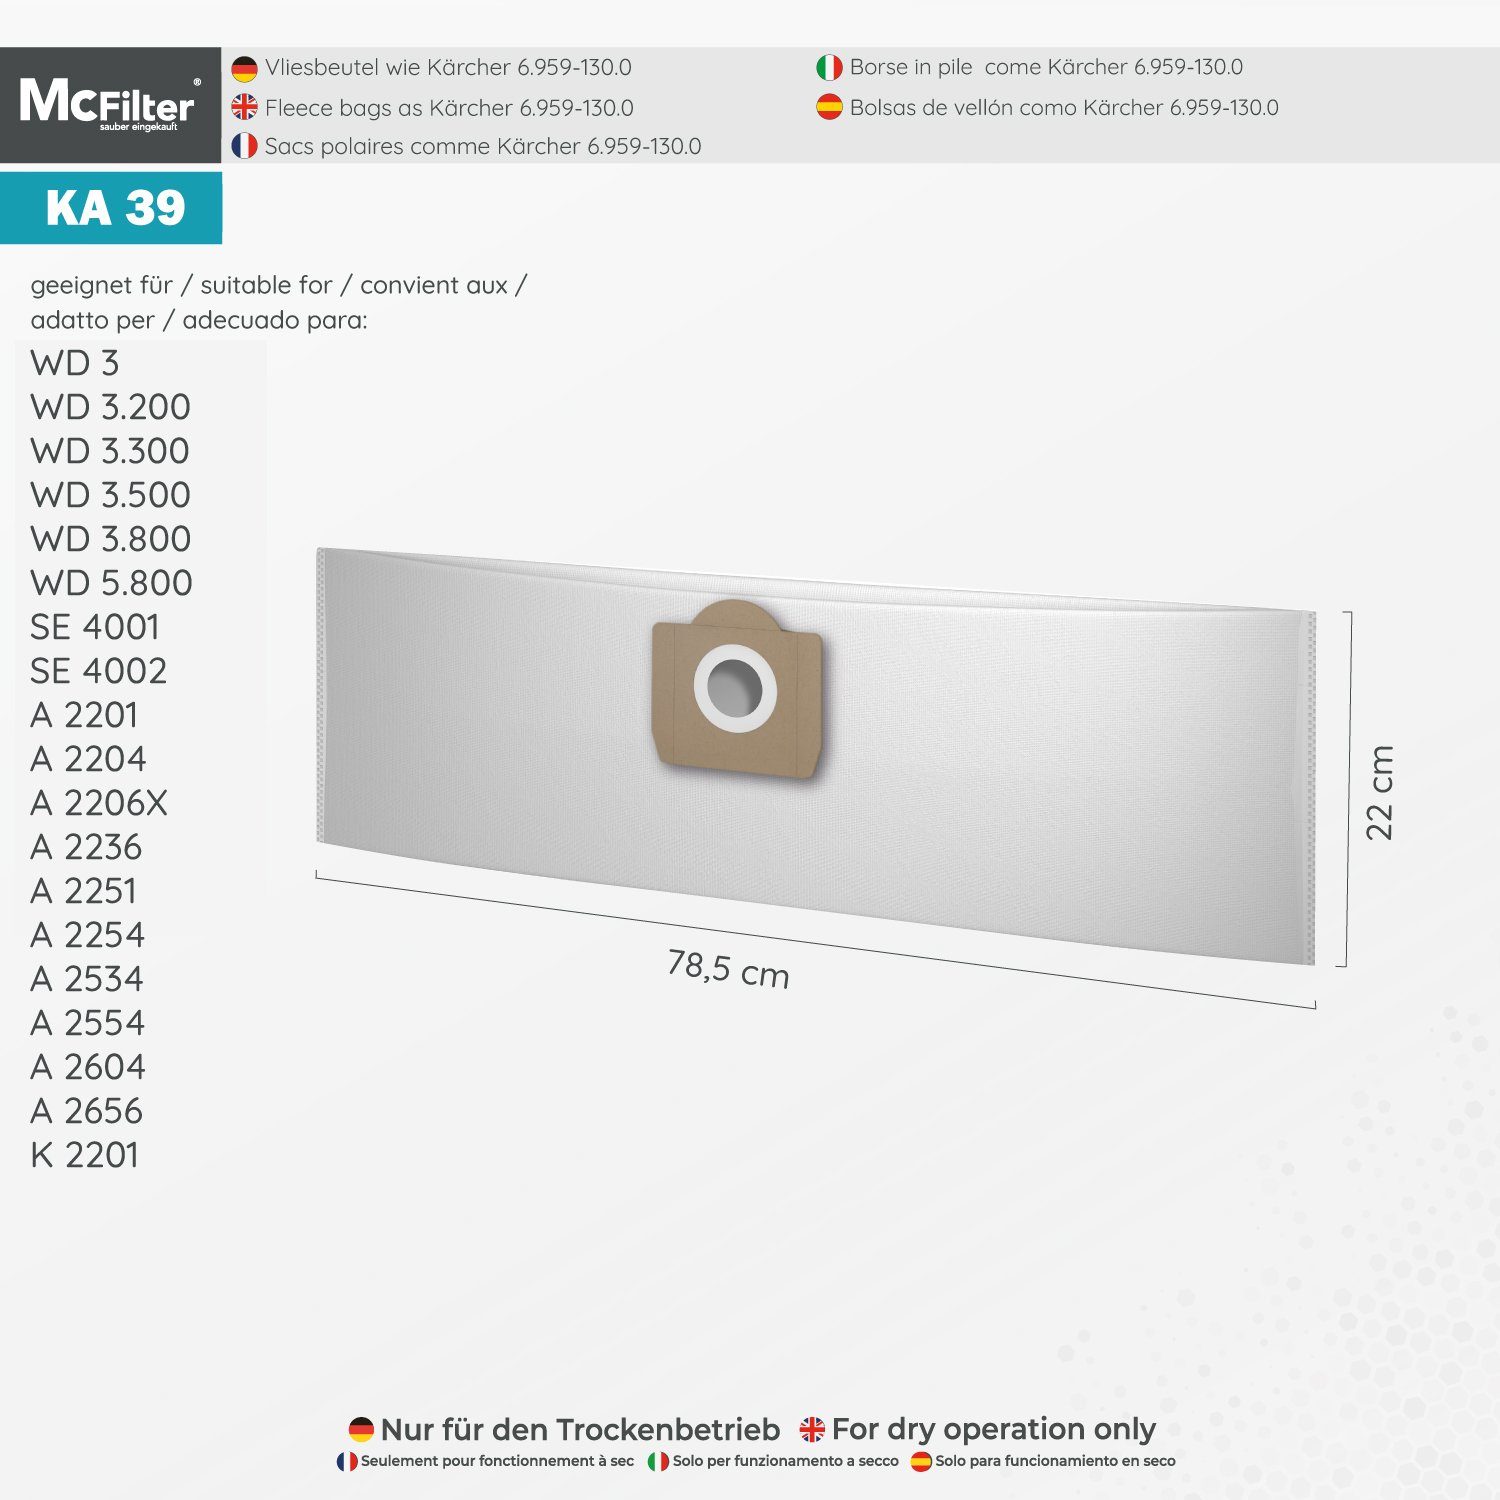 McFilter Staubsaugerbeutel geeignet für 6.959-130.0 + Filter, Kit für Fireplace für 2 (20 Stück) St., 6.414-552.0 MV 3 passend (Beutel), 22 Kärcher MV3 Alternative (Patronenfilter) Staubsauger